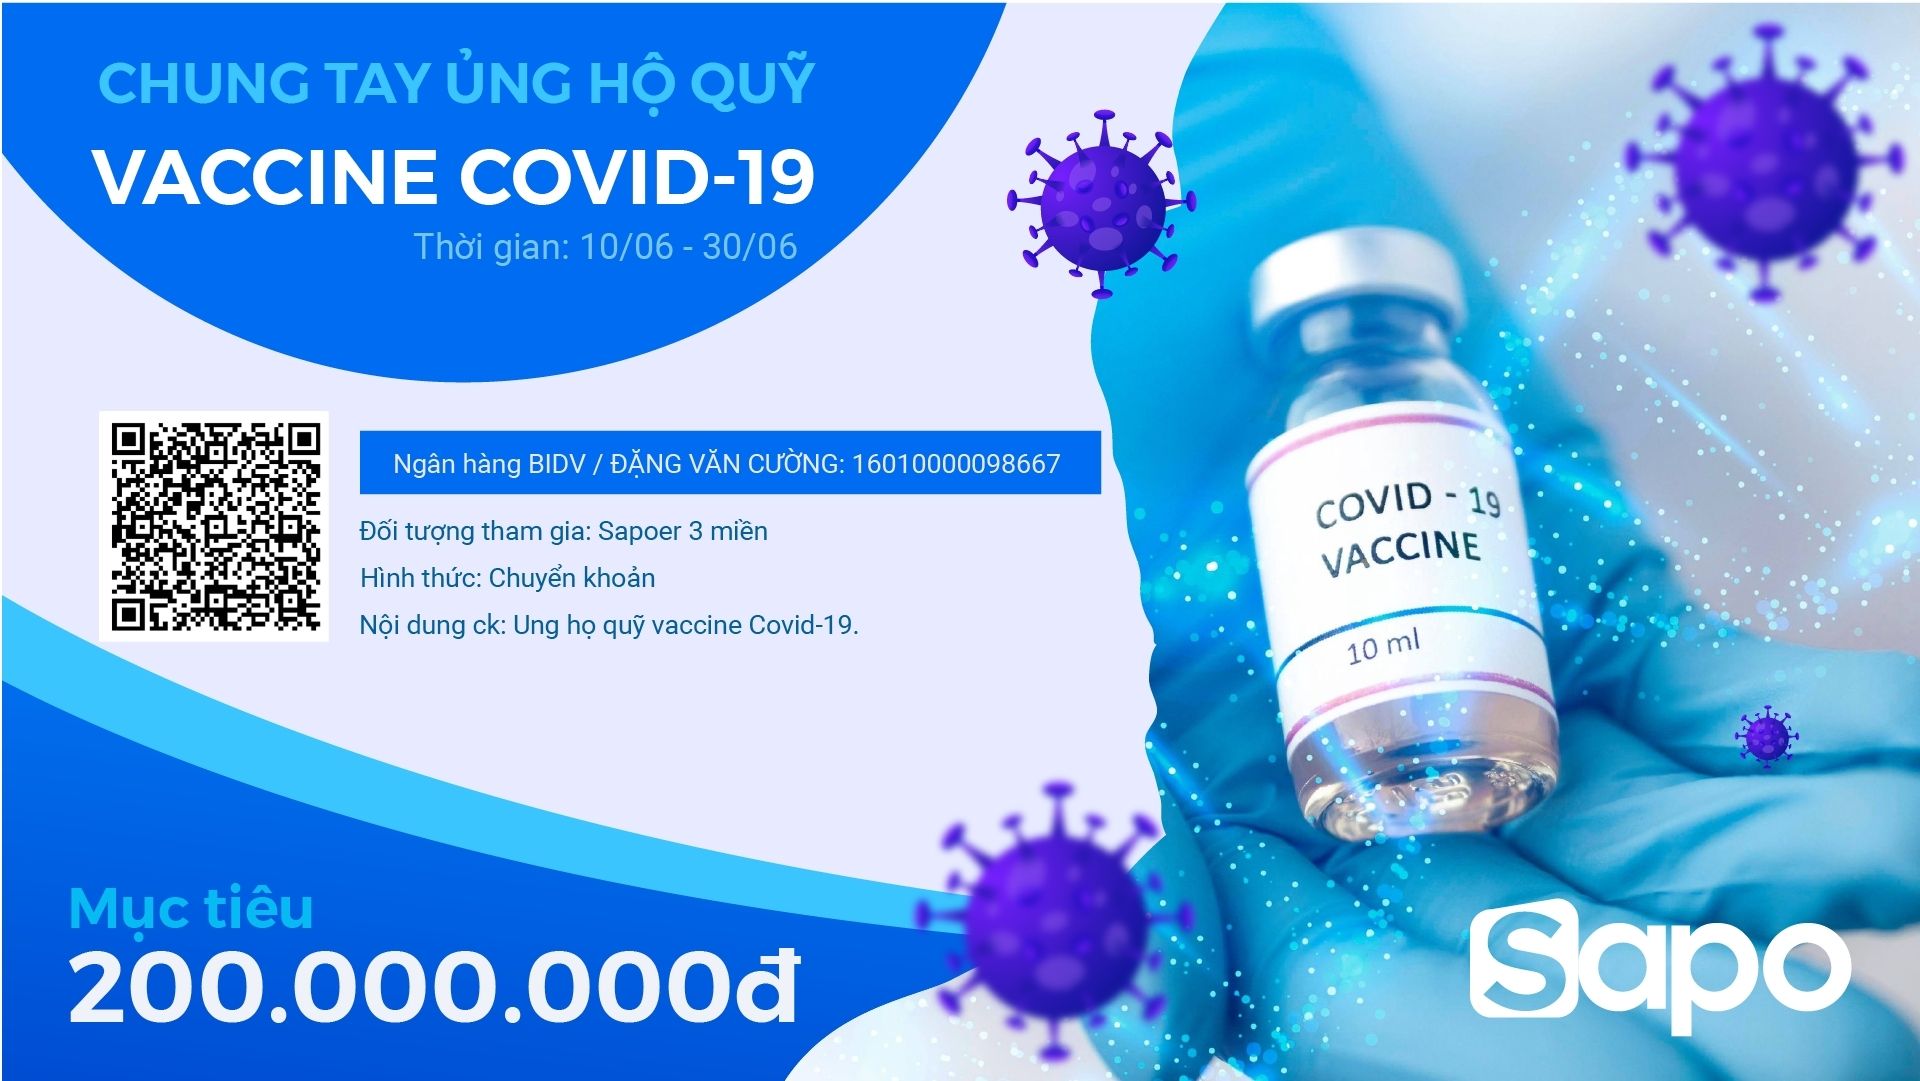 Kêu gọi Sapoer 3 miền: Chung tay ủng hộ quỹ Vaccine Covid-19